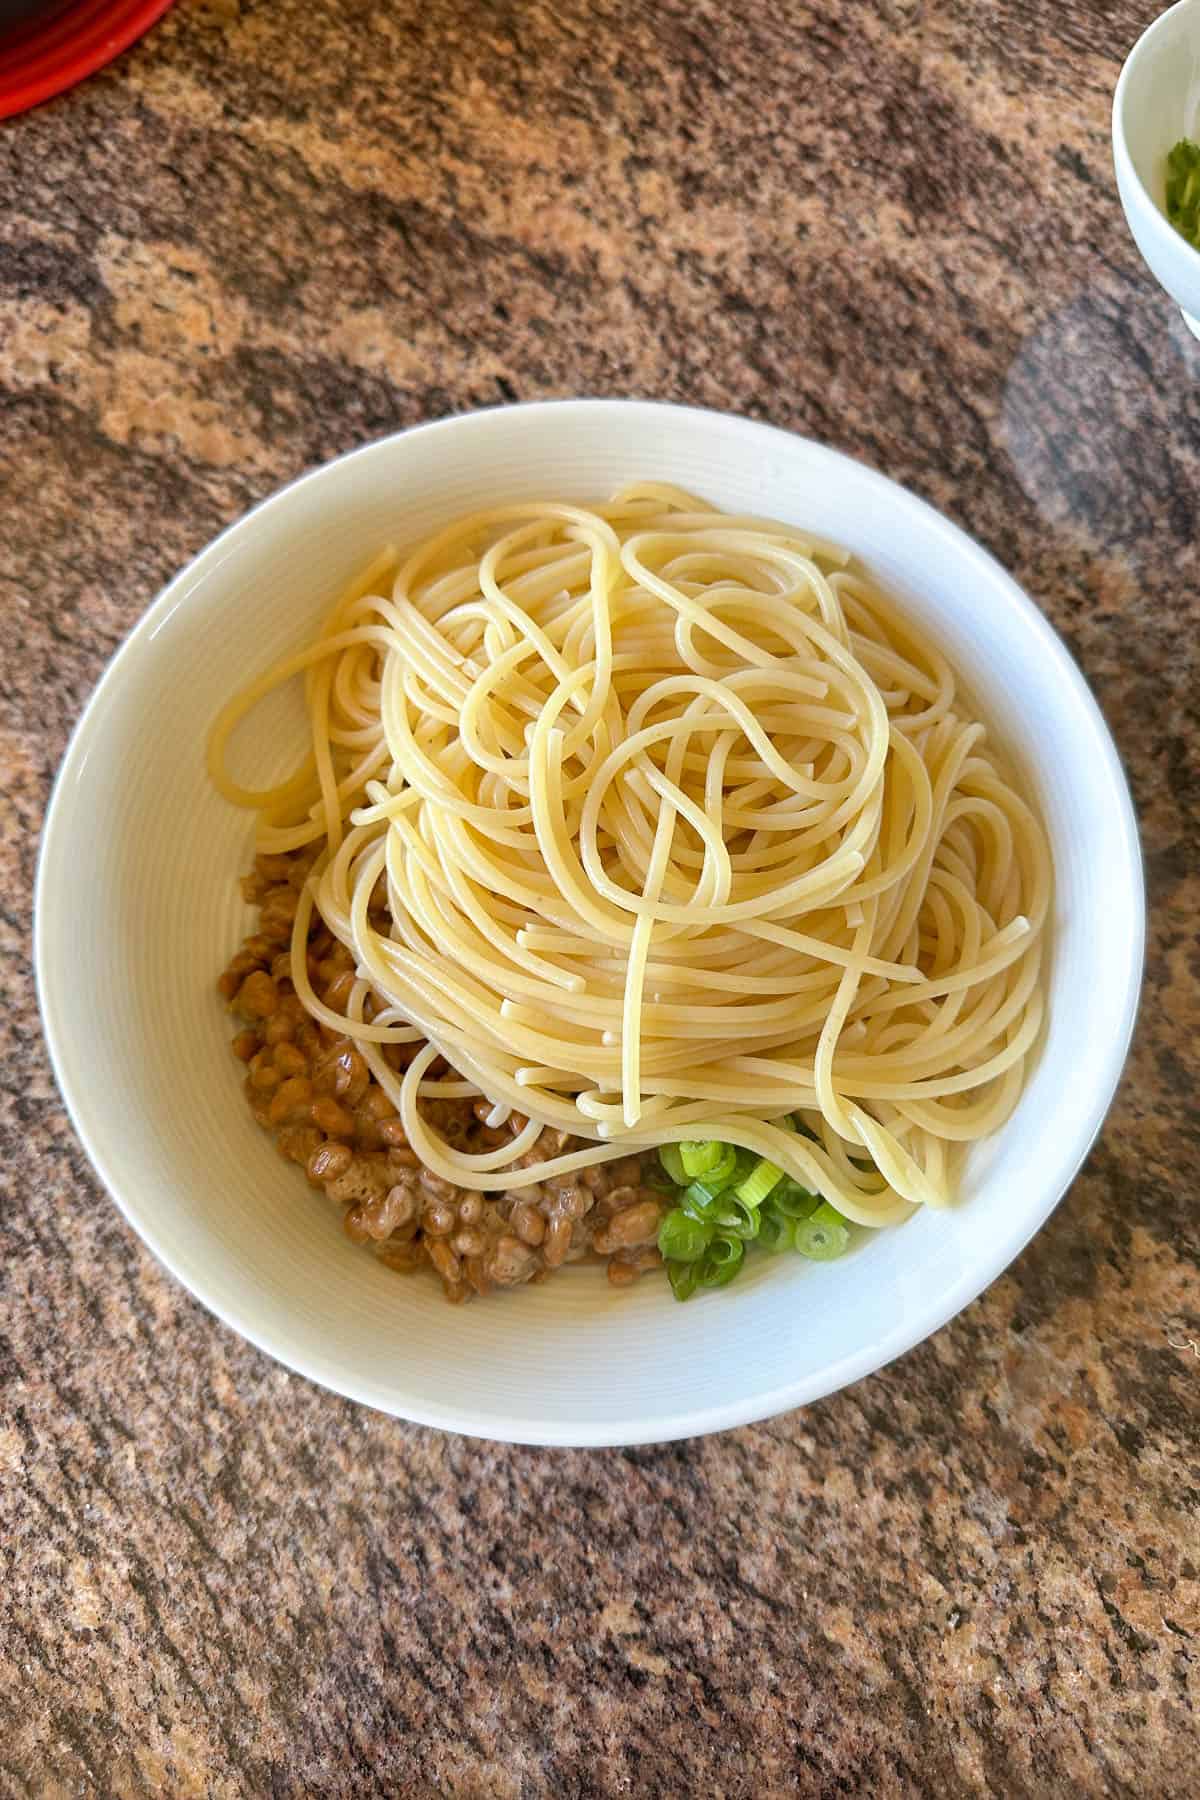 Mixing the ingredients to make Natto Spaghetti.